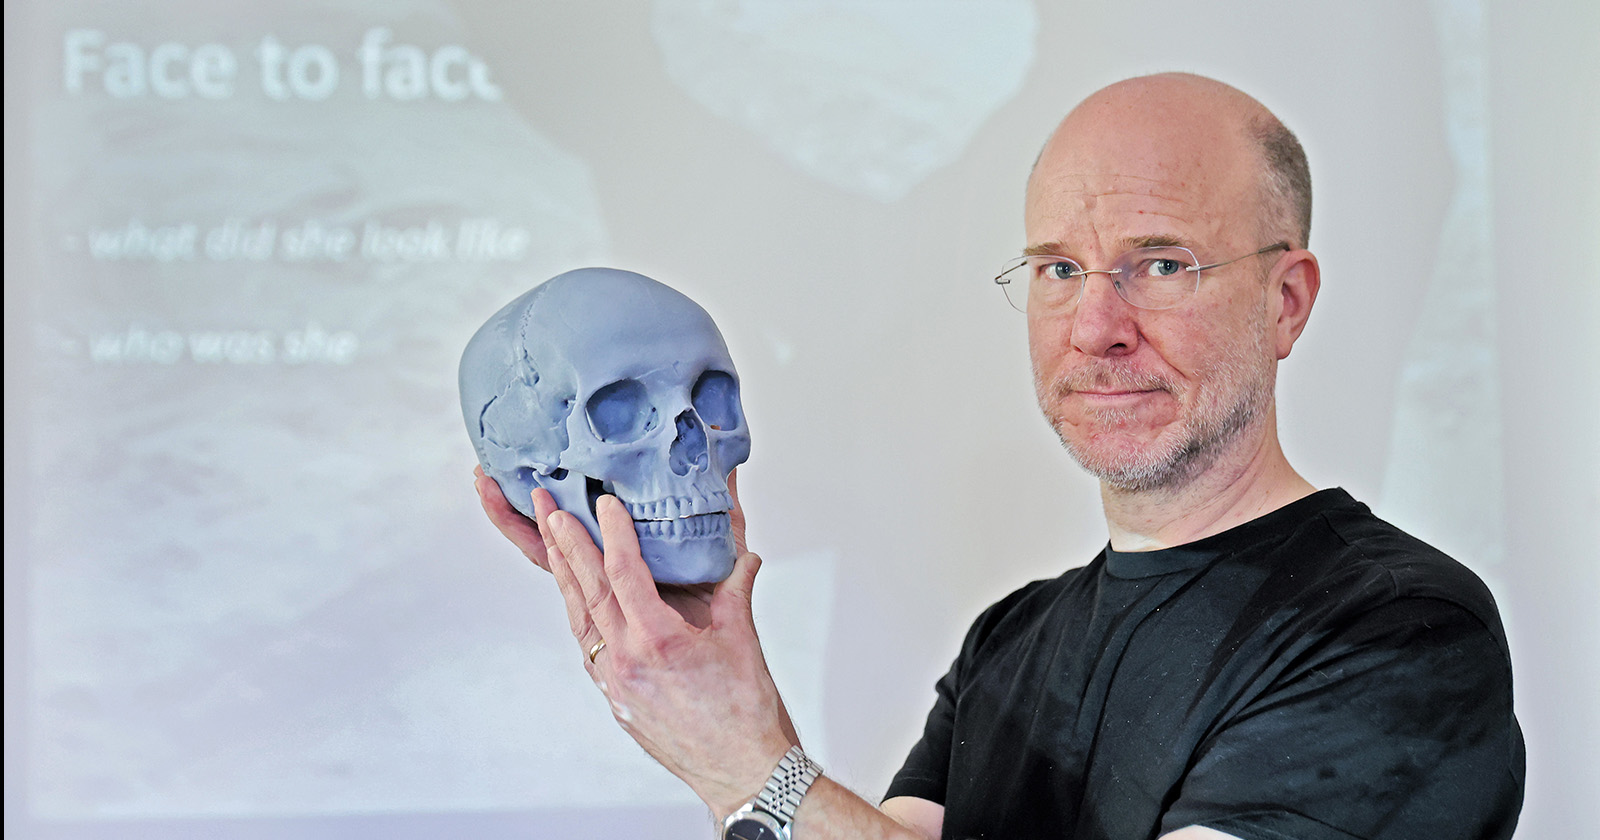 Oskar Nilsson, artysta archeolog specjalizujący się w rekonstrukcji twarzy naszych przodków. Oskar Nilsson trzyma model 3D czaszki tzw. wampirki